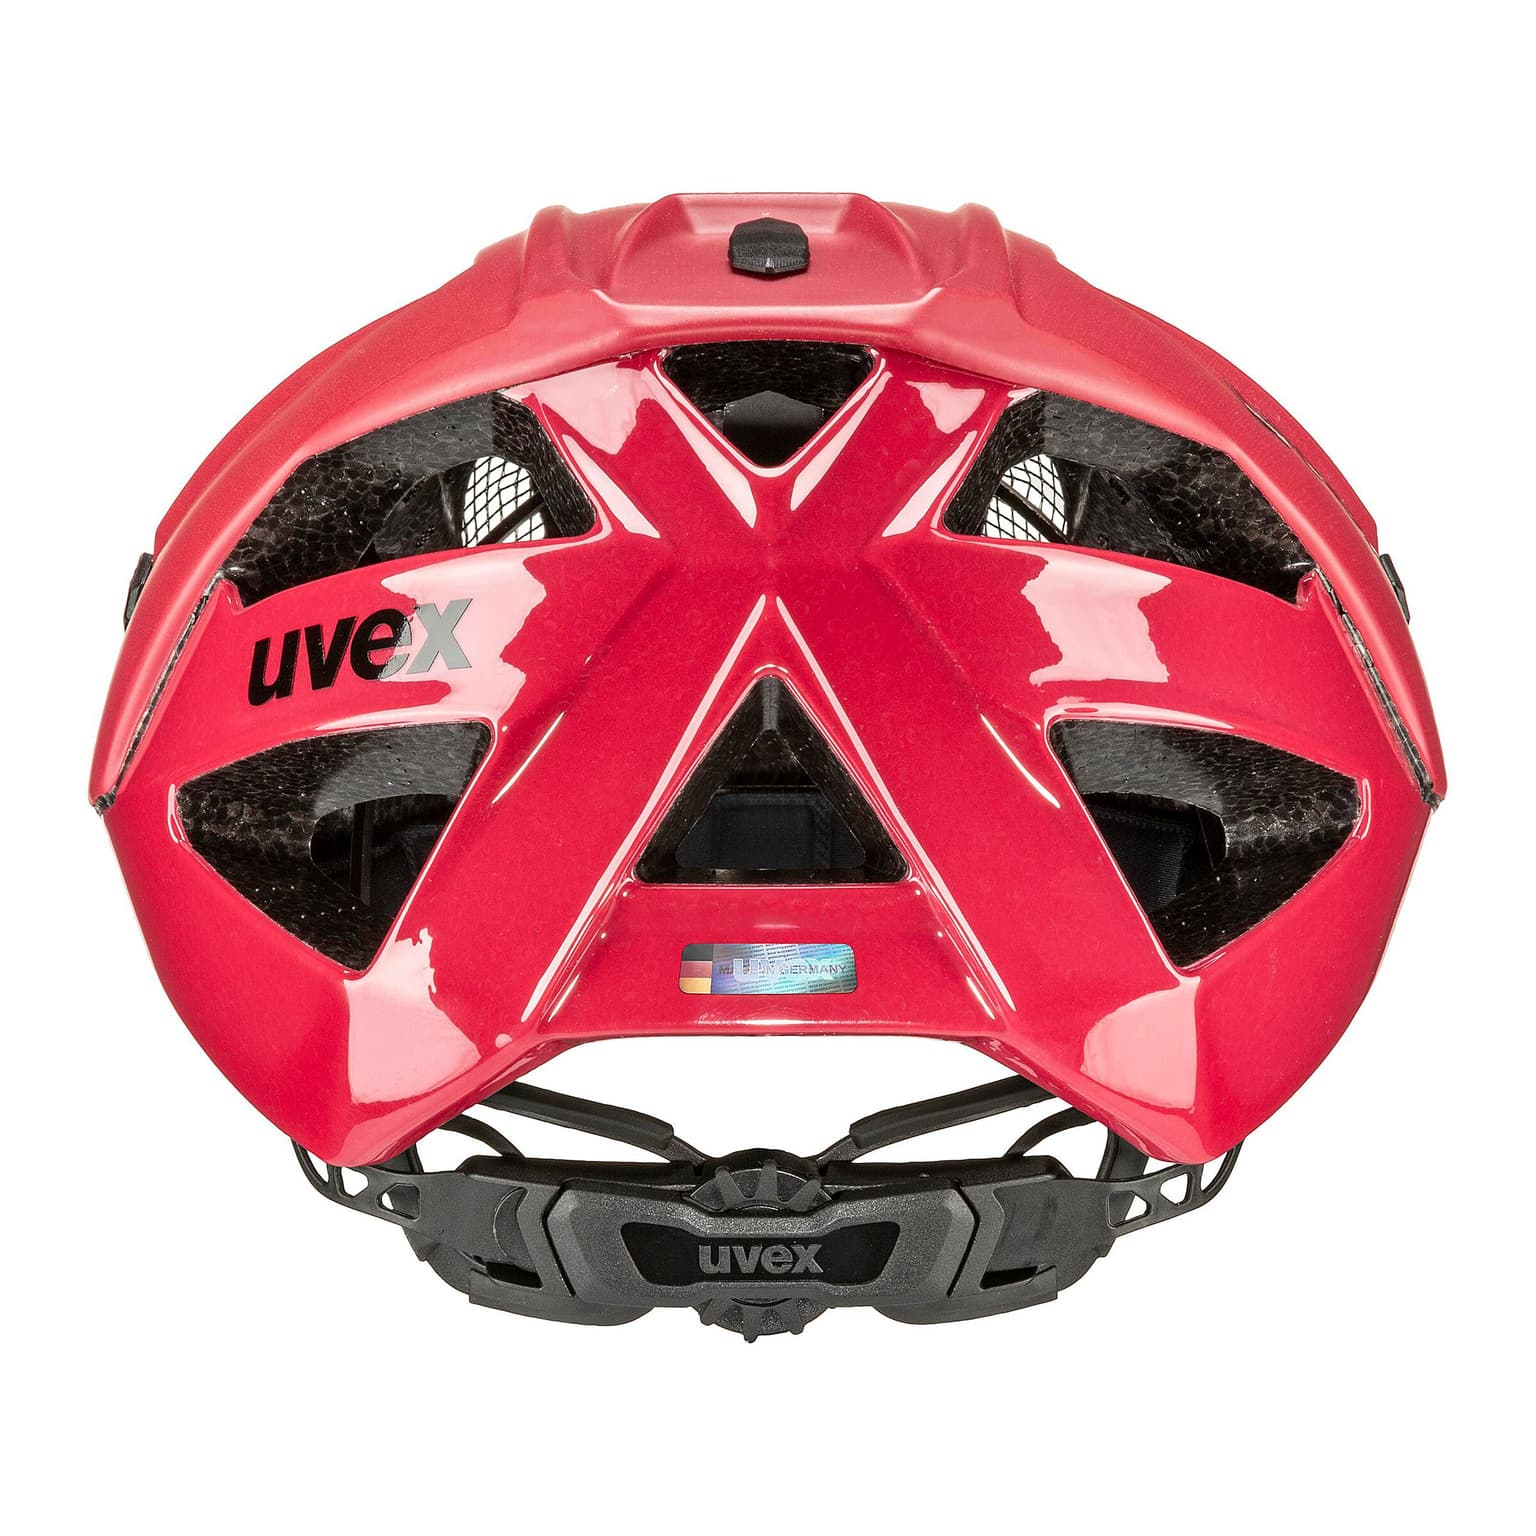 Uvex Uvex Quatro cc Casque de vélo rouge 5